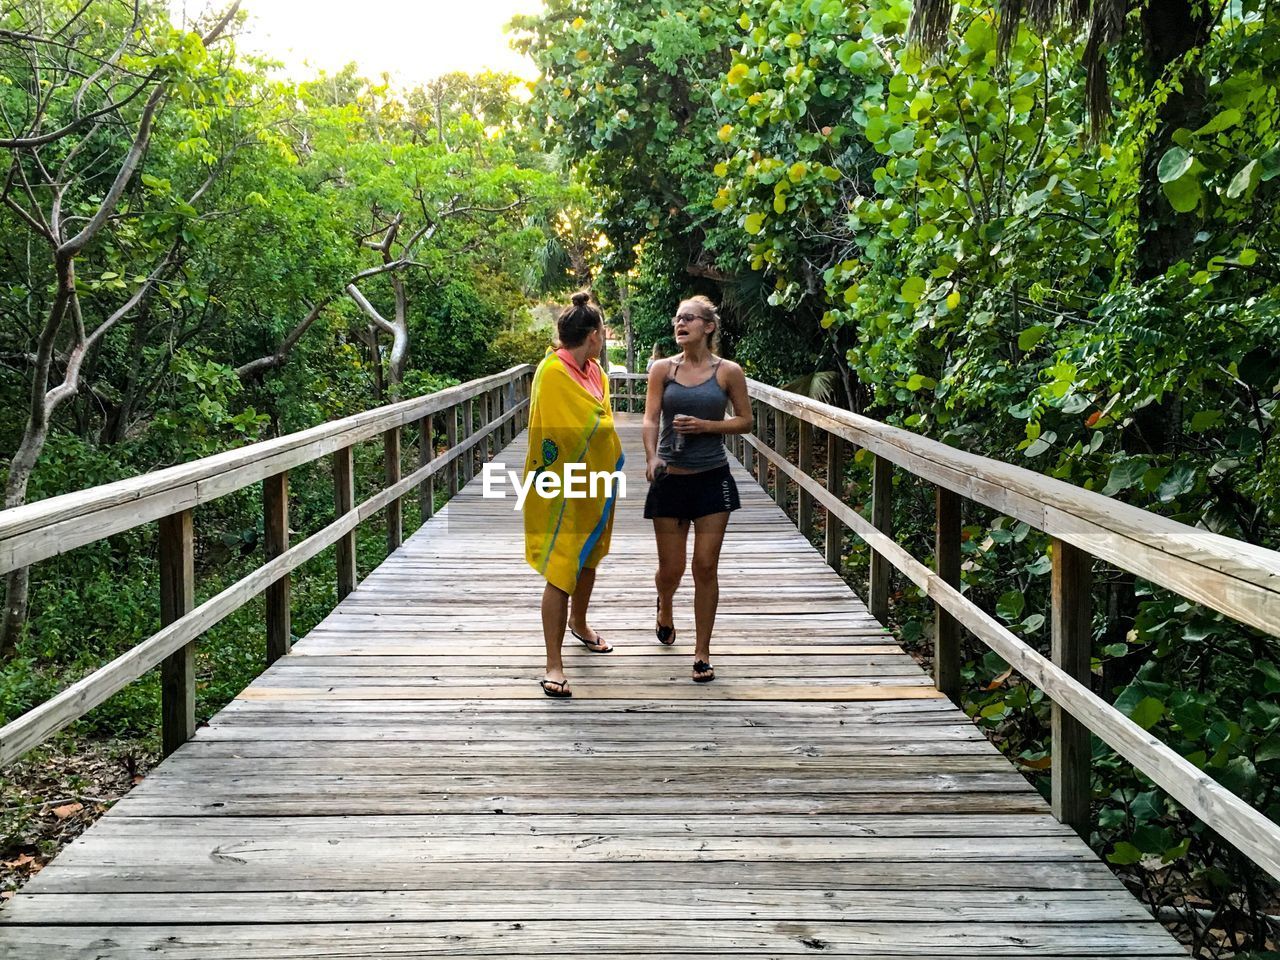 Female friends walking on wooden bridge amidst trees